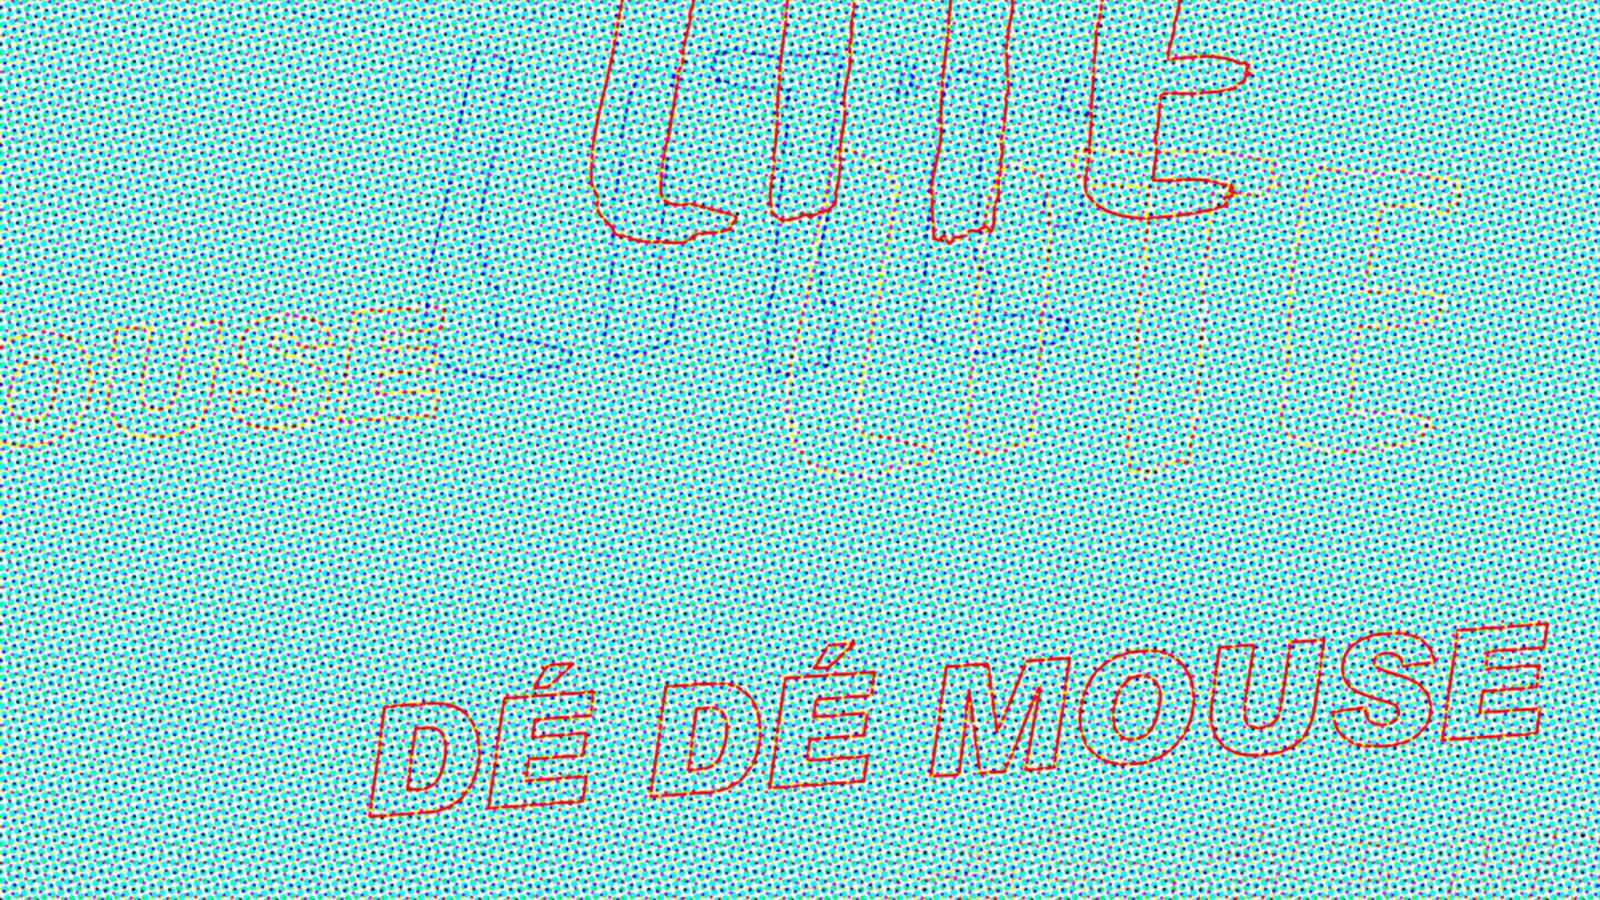 LITE and DÉ DÉ MOUSE Release Collaboration Single © LITE x DE DE MOUSE. All rights reserved.